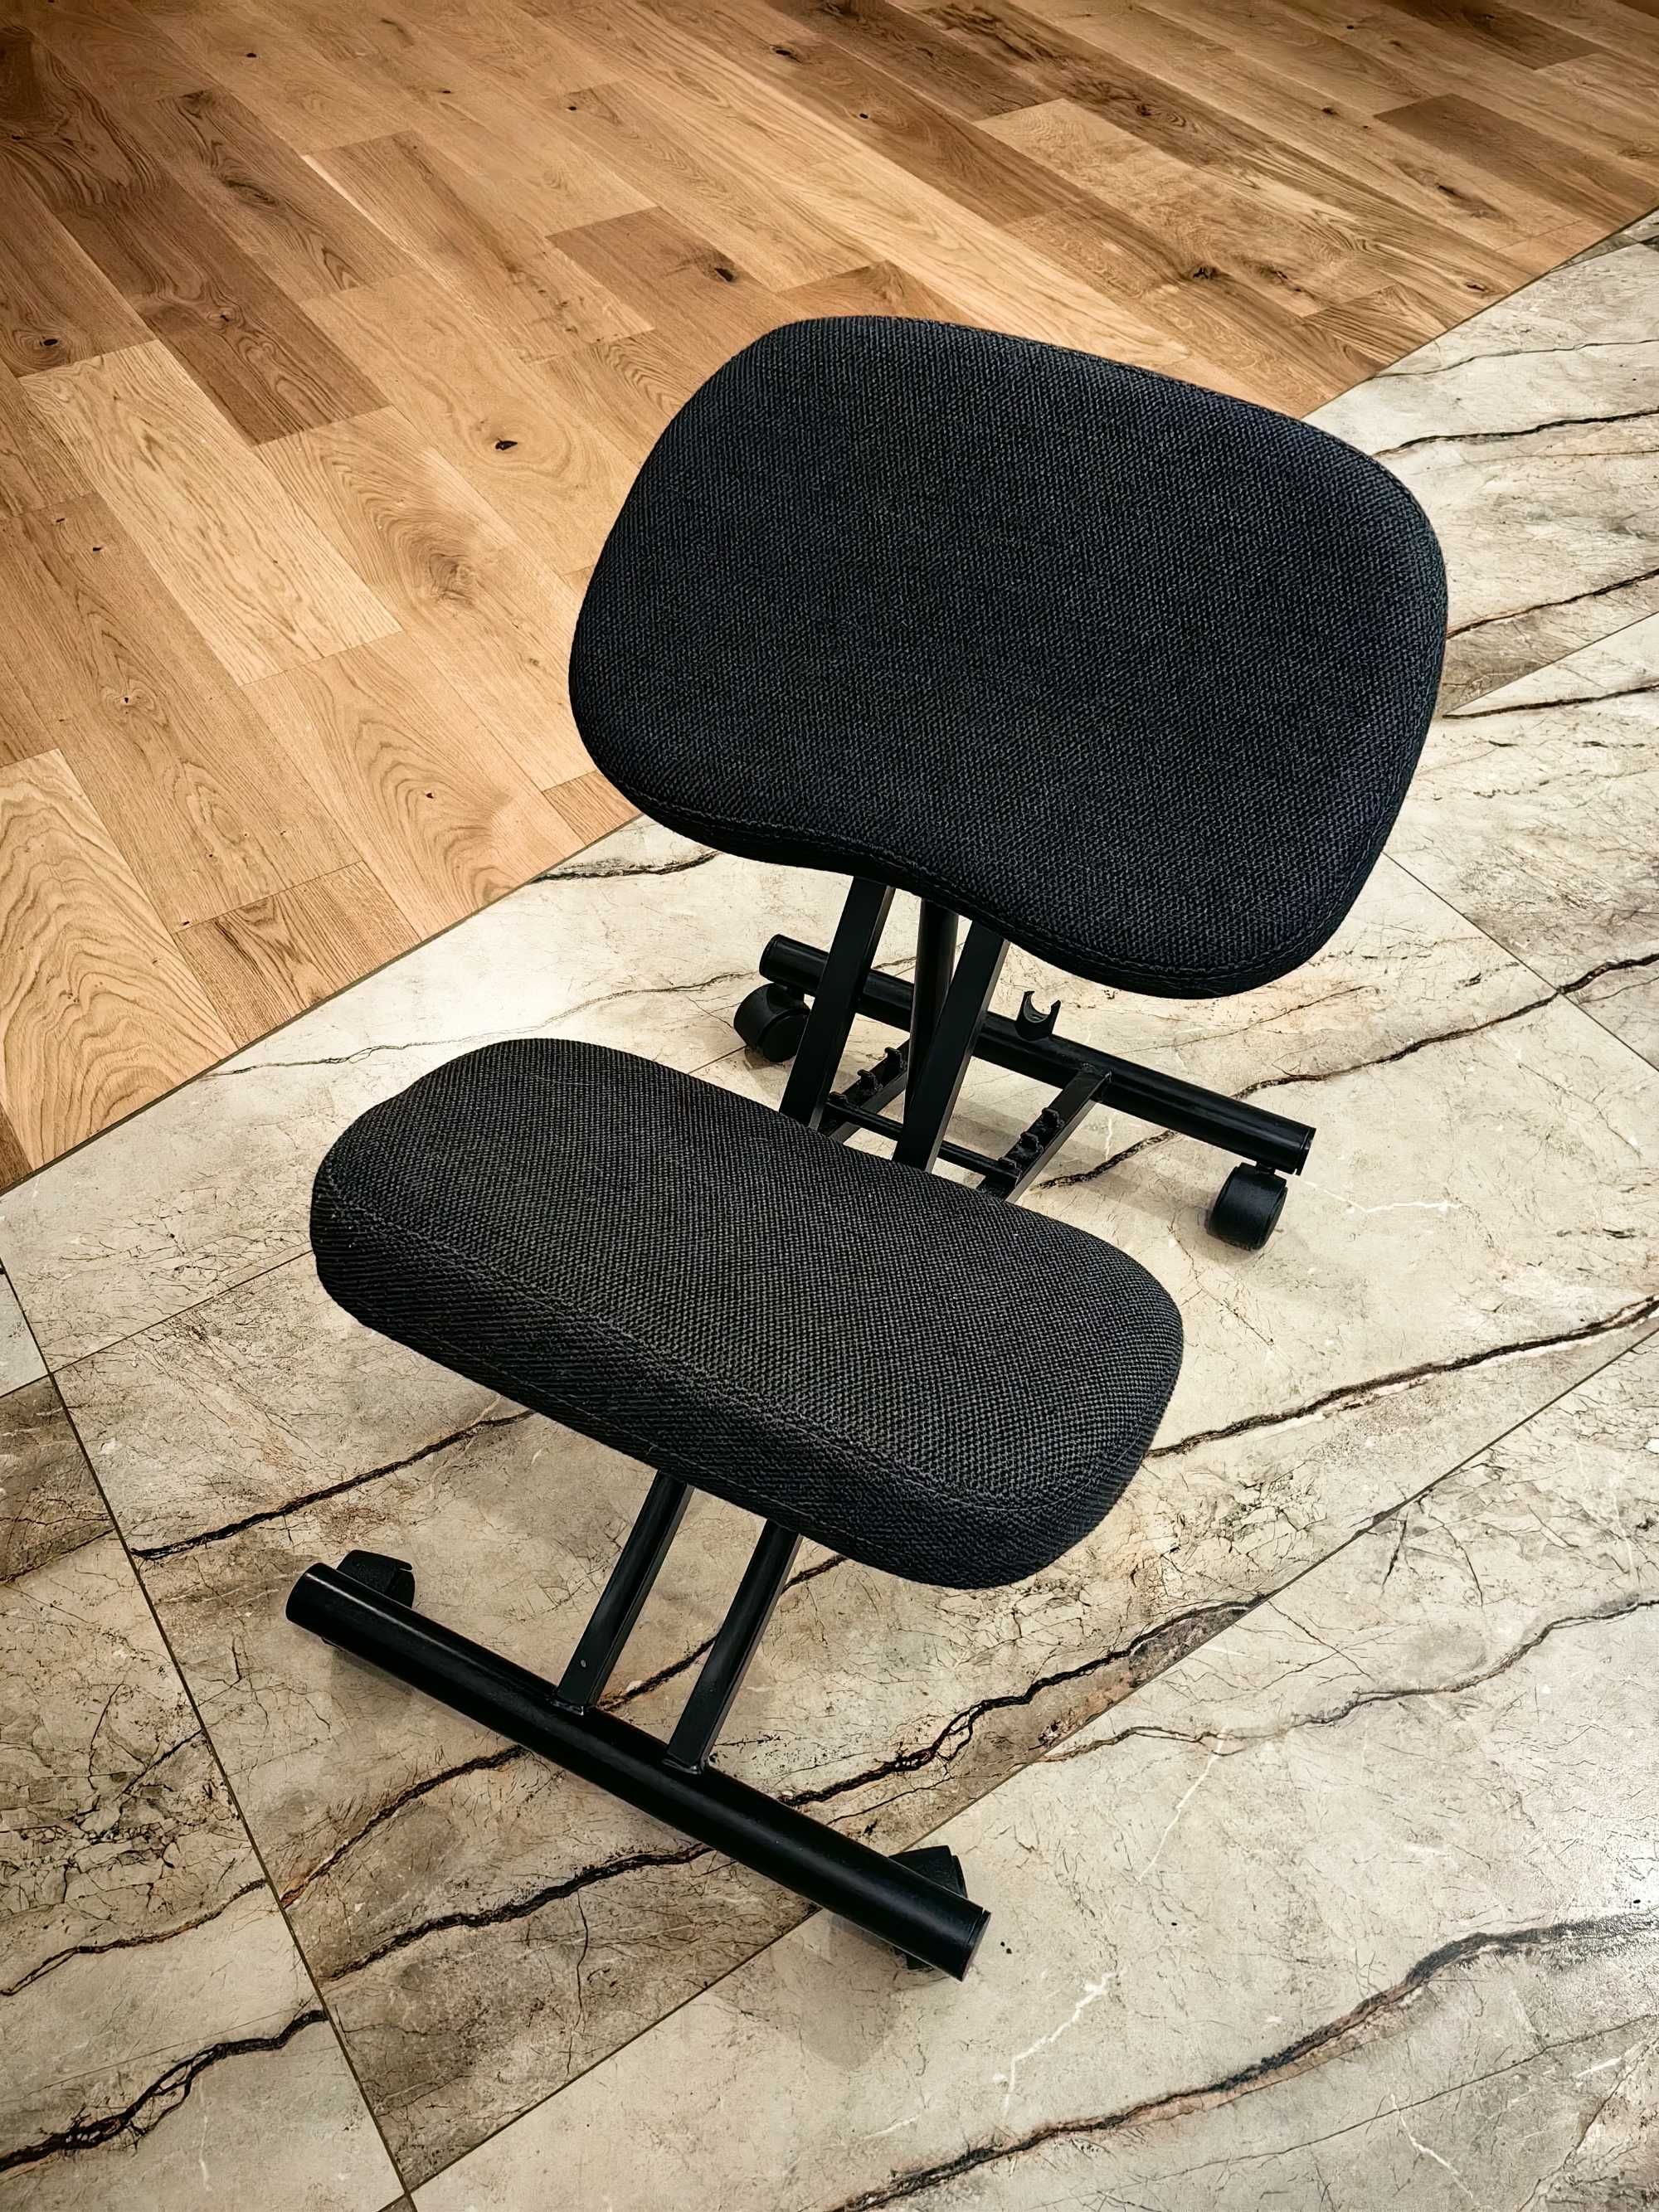 Klękosiad biurowy ergonomiczne krzeslo do biurka